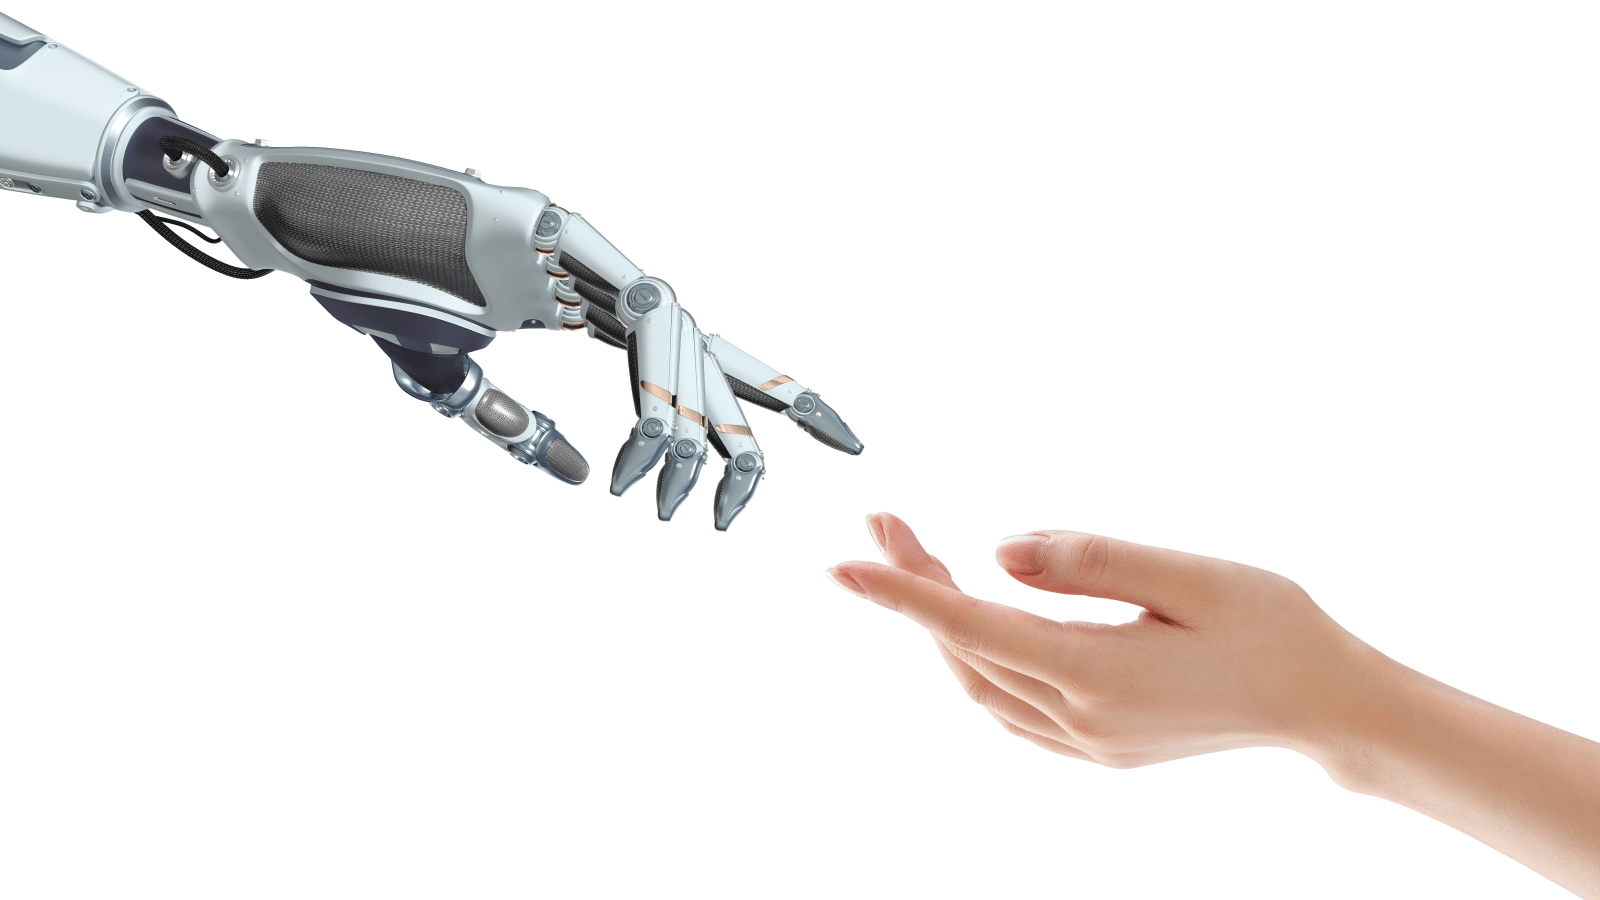 Come automatizzare le decisioni basate sull'intelligenza artificiale in modo responsabile e sicuro